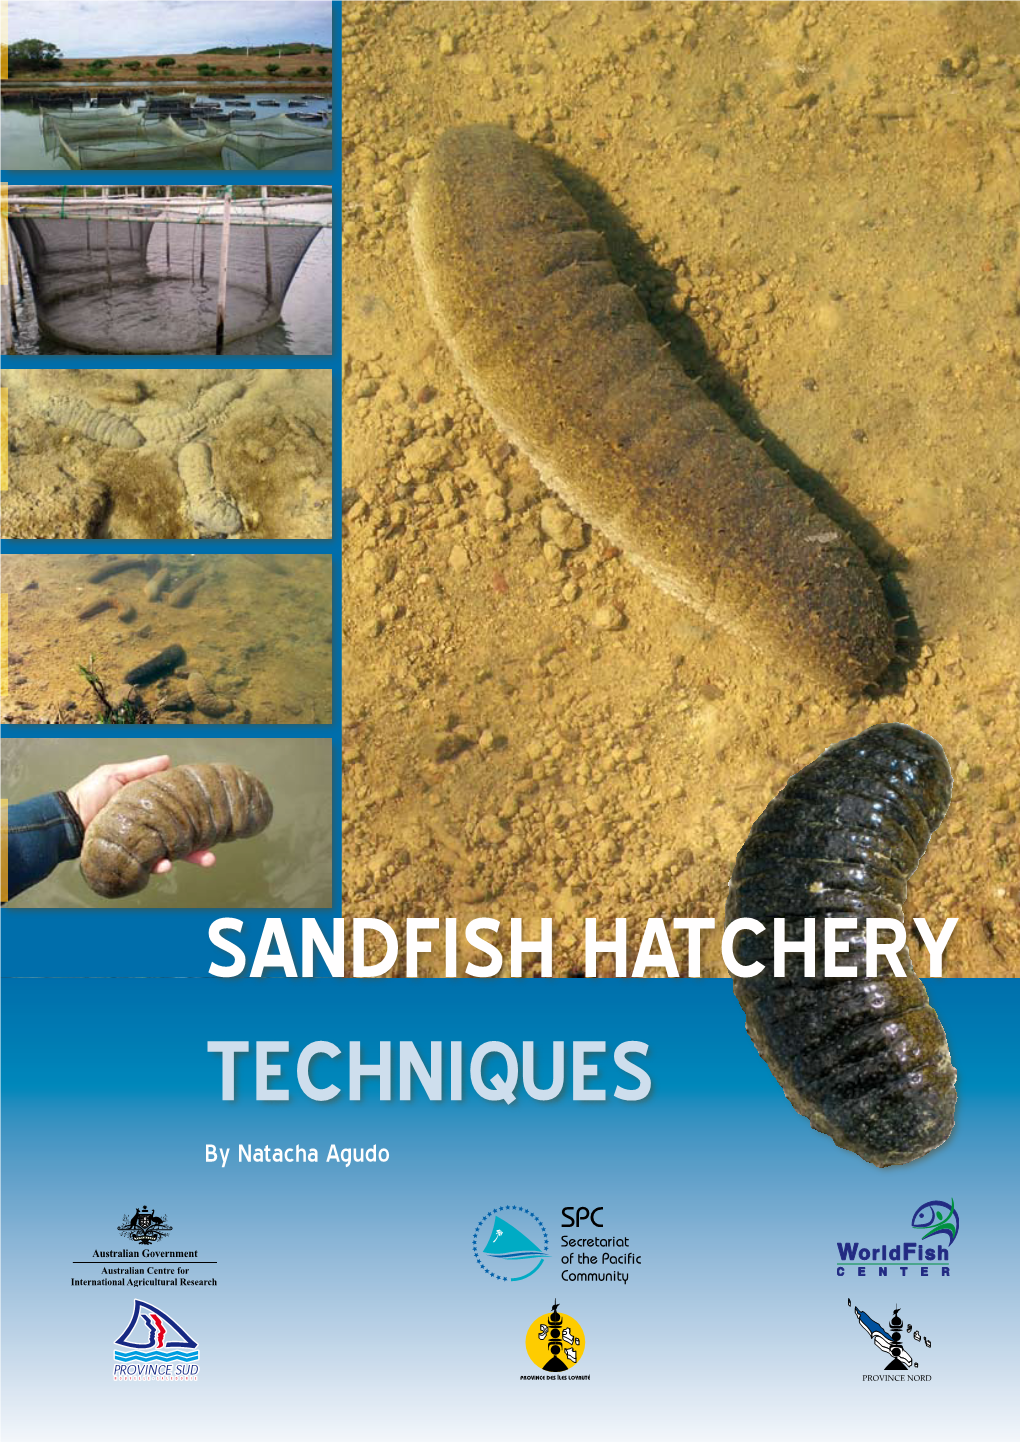 SANDFISH HATCHERY TECHNIQUES by Natacha Agudo